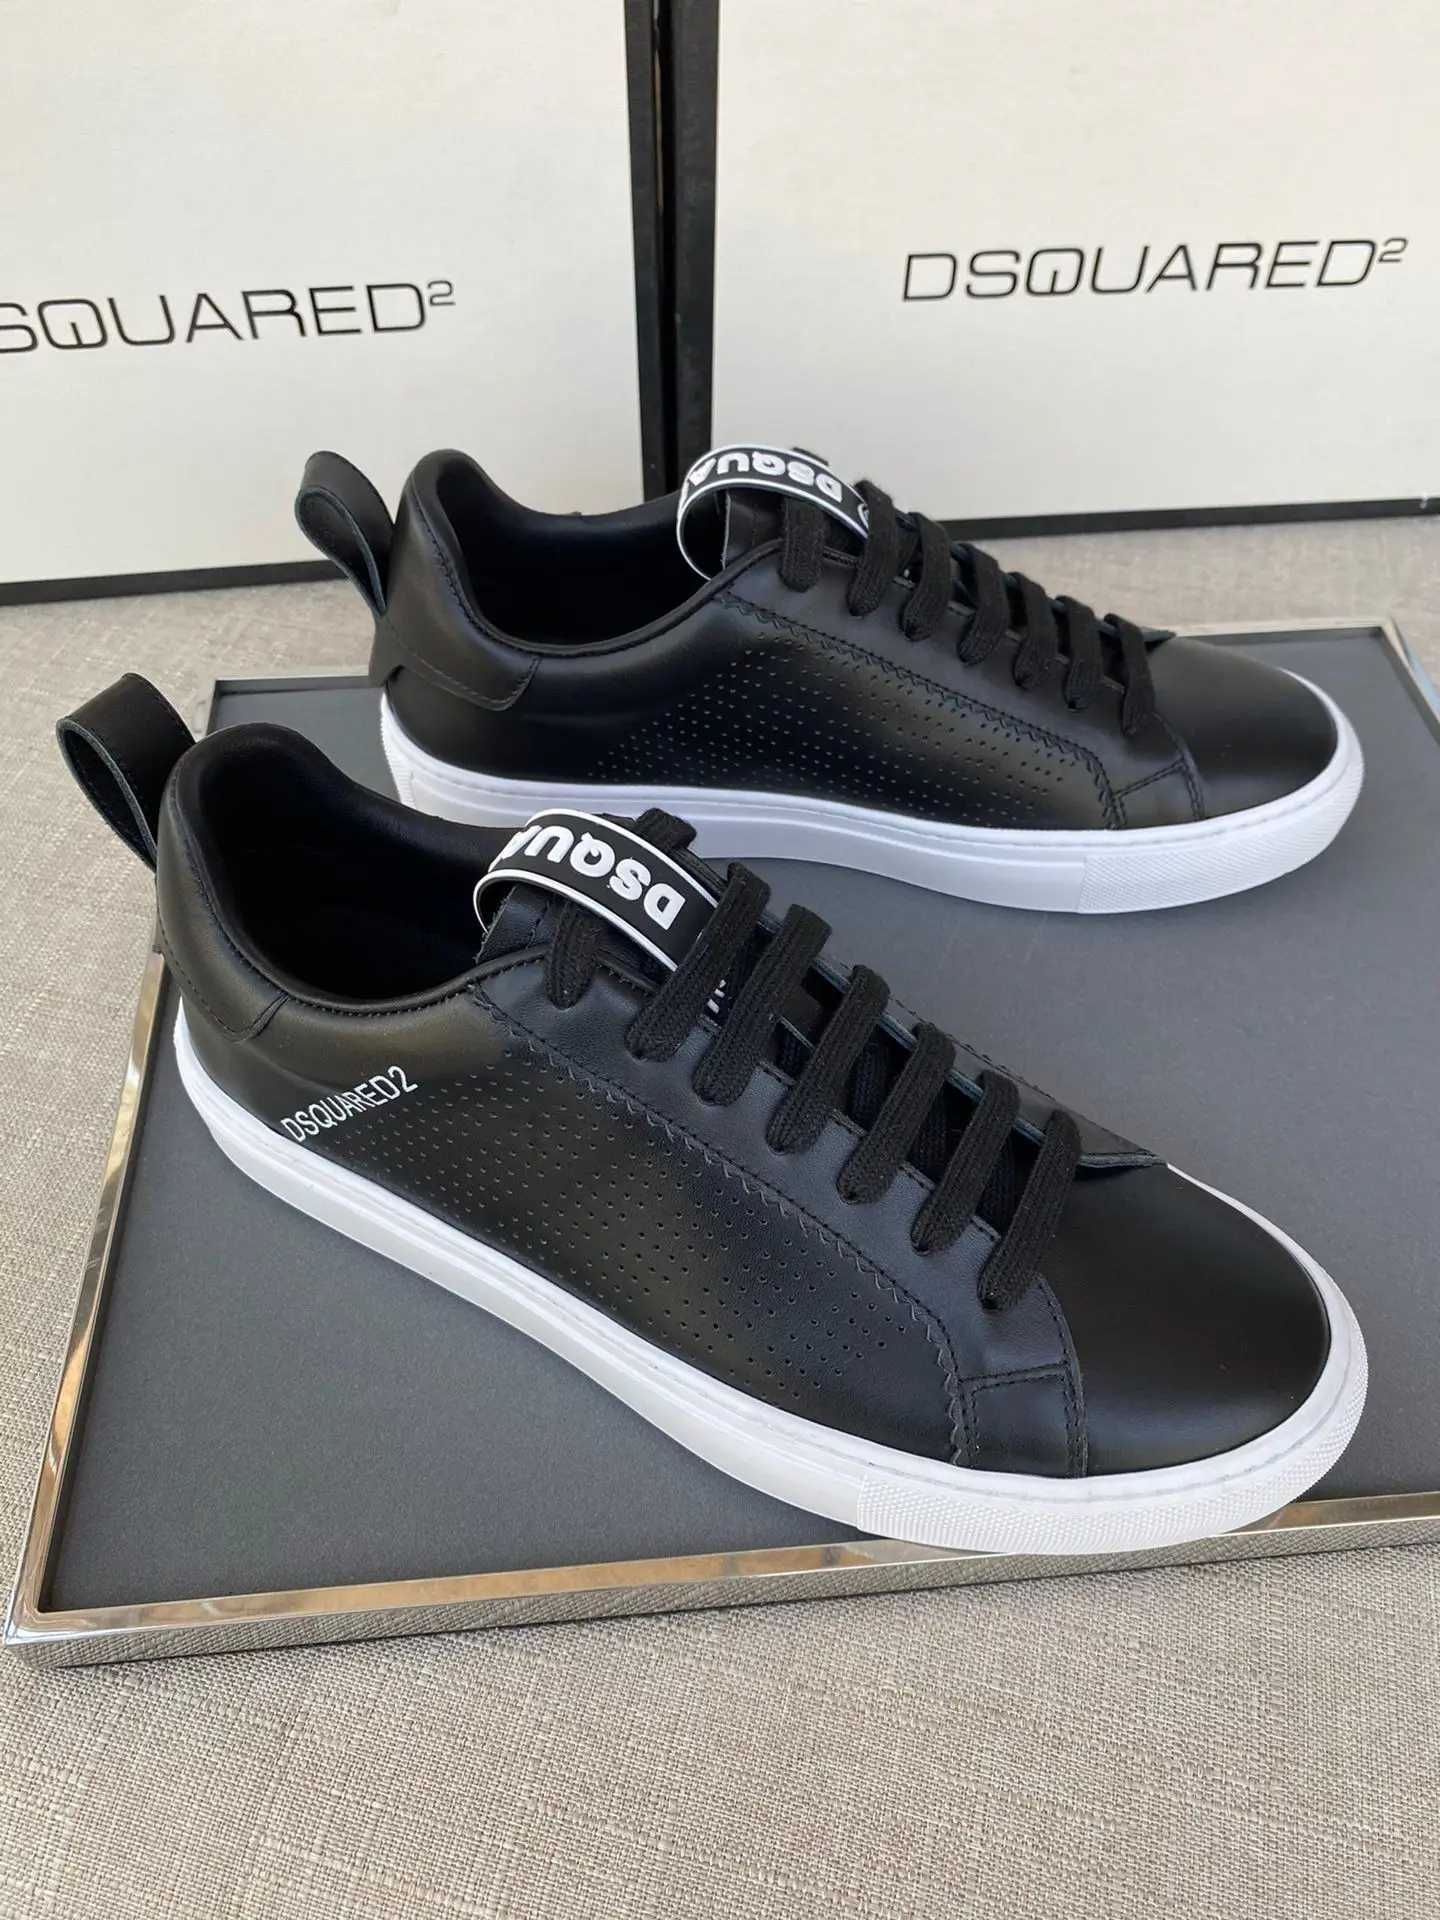 

Мужские кожаные кроссовки Dsquared2 итальянского бренда, дышащие кроссовки DSQ2, повседневная обувь с надписью, черные кроссовки для мальчиков, о...